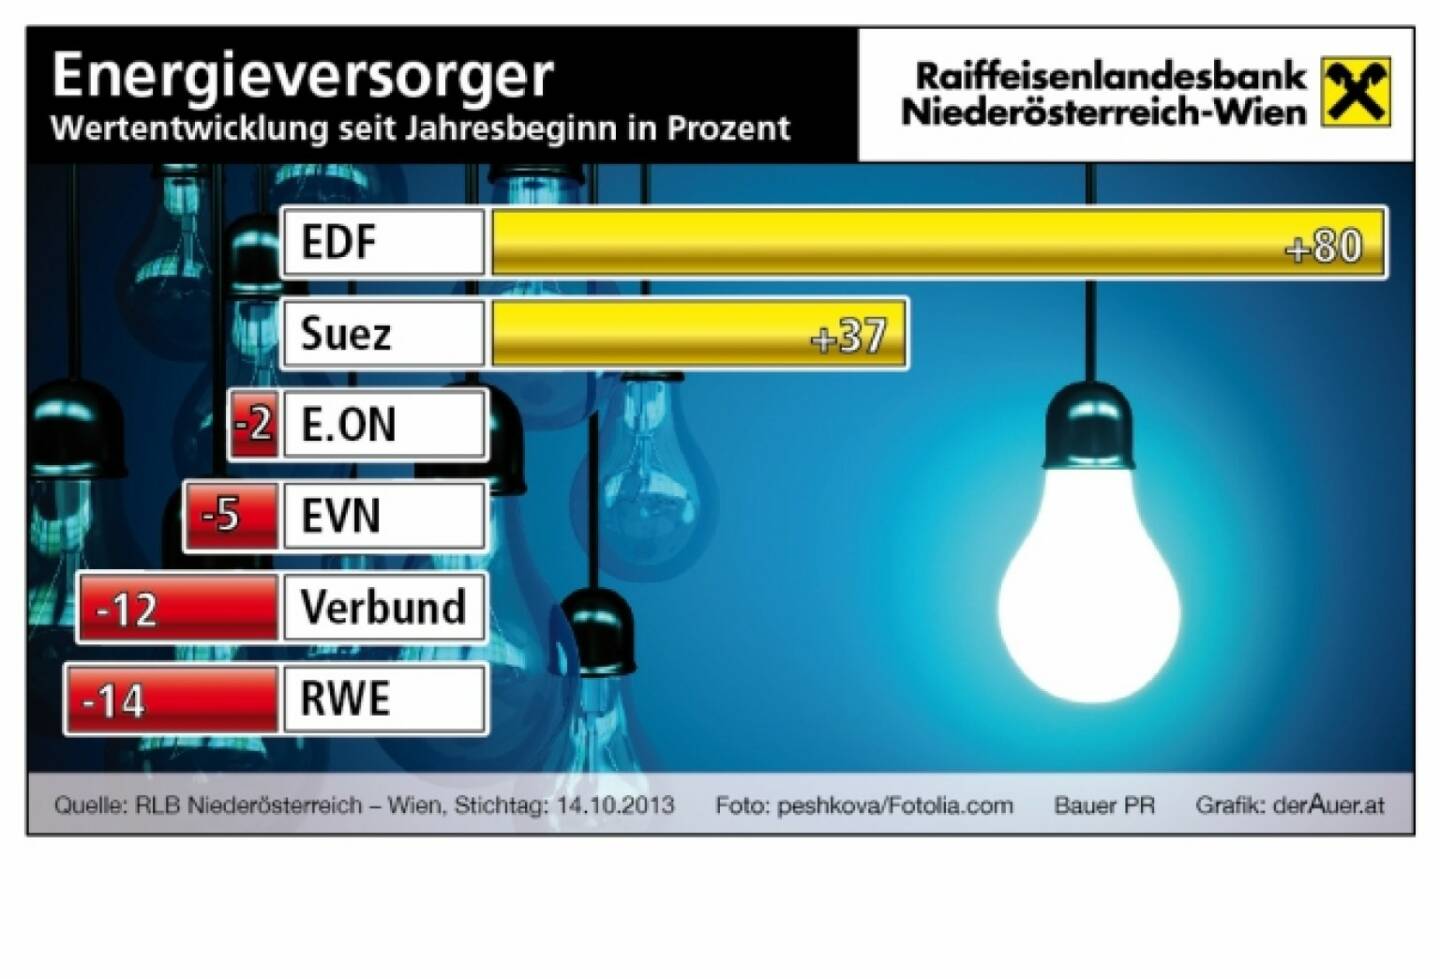 Energieversorger-Aktien seit Jahresbeginn in Prozent: EDF, Suez, E.On, EVN, Verbund, RWE (c) derAuer Grafik Buch Web